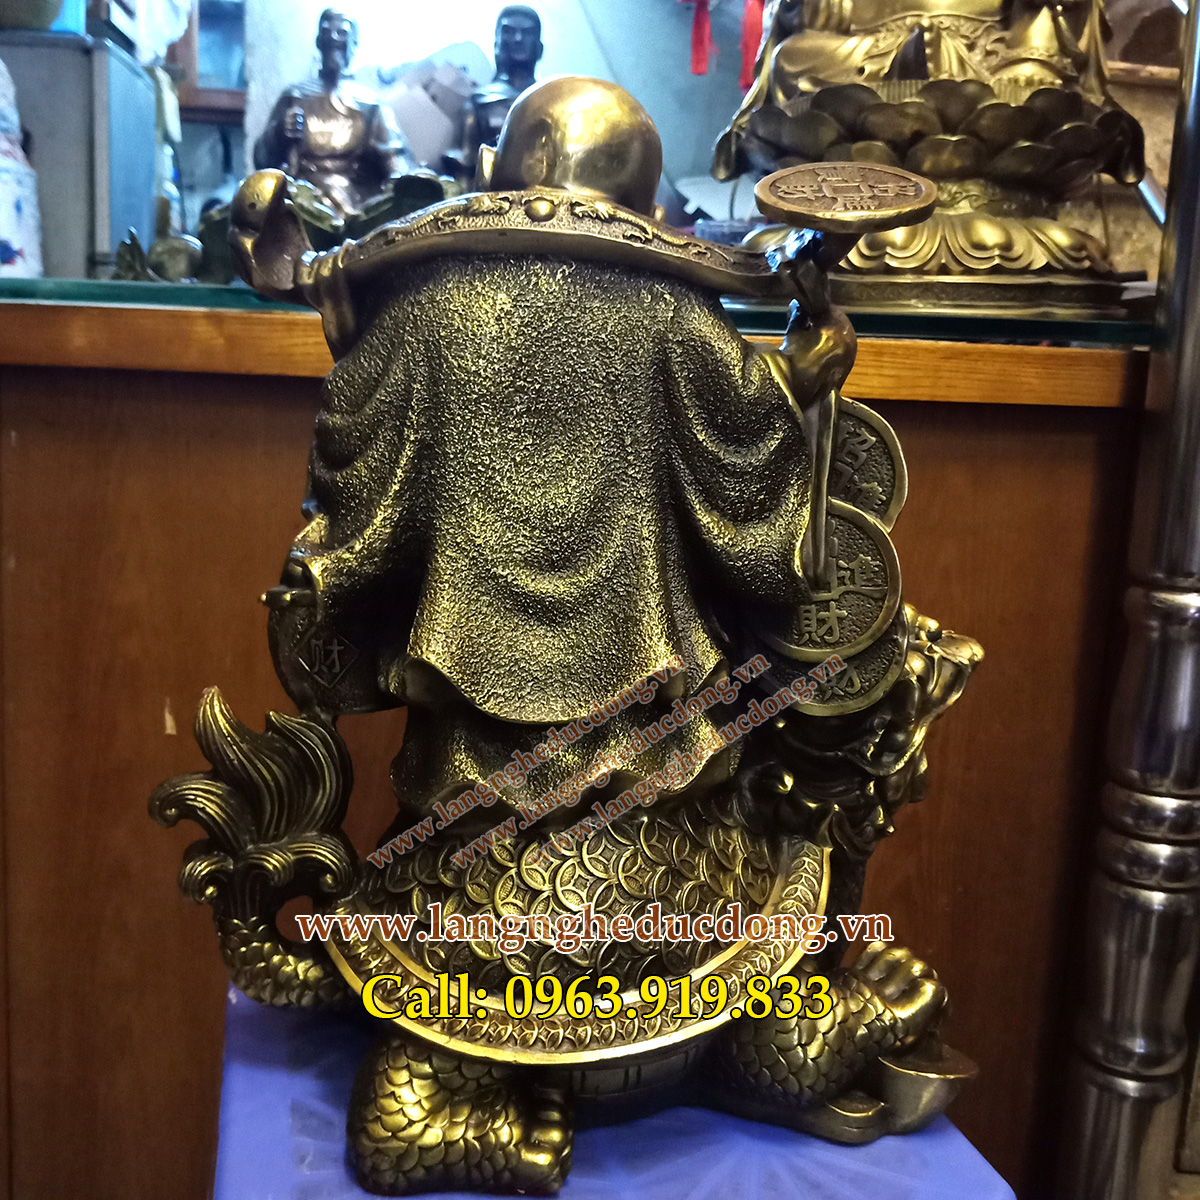 Tượng diac gánh vàng, dilac đứng trên lưng rùa, tượng dilac 37cm